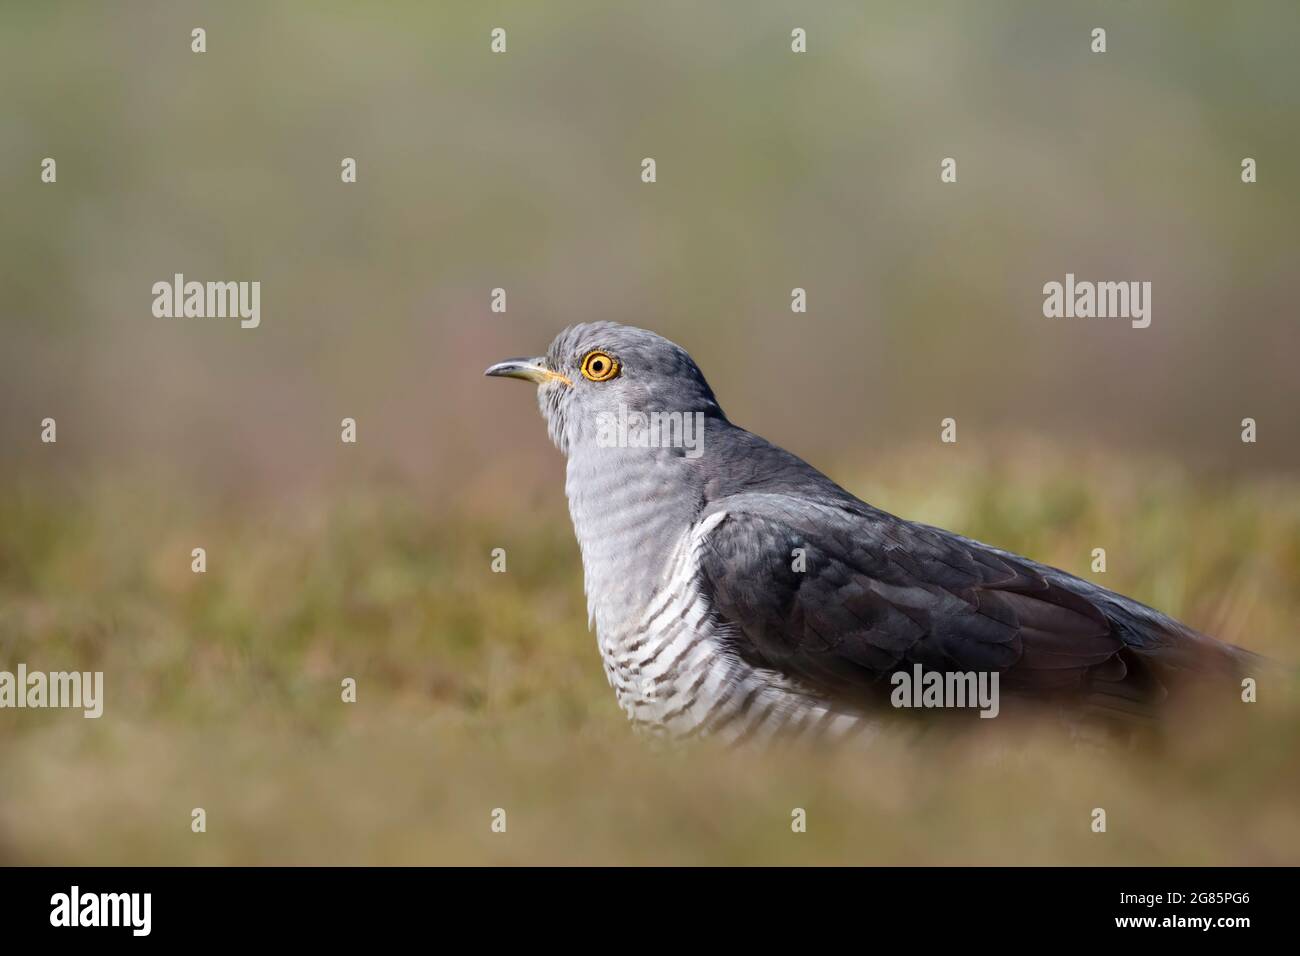 Gros plan d'un Cuckoo commun dans un pré, Royaume-Uni. Banque D'Images